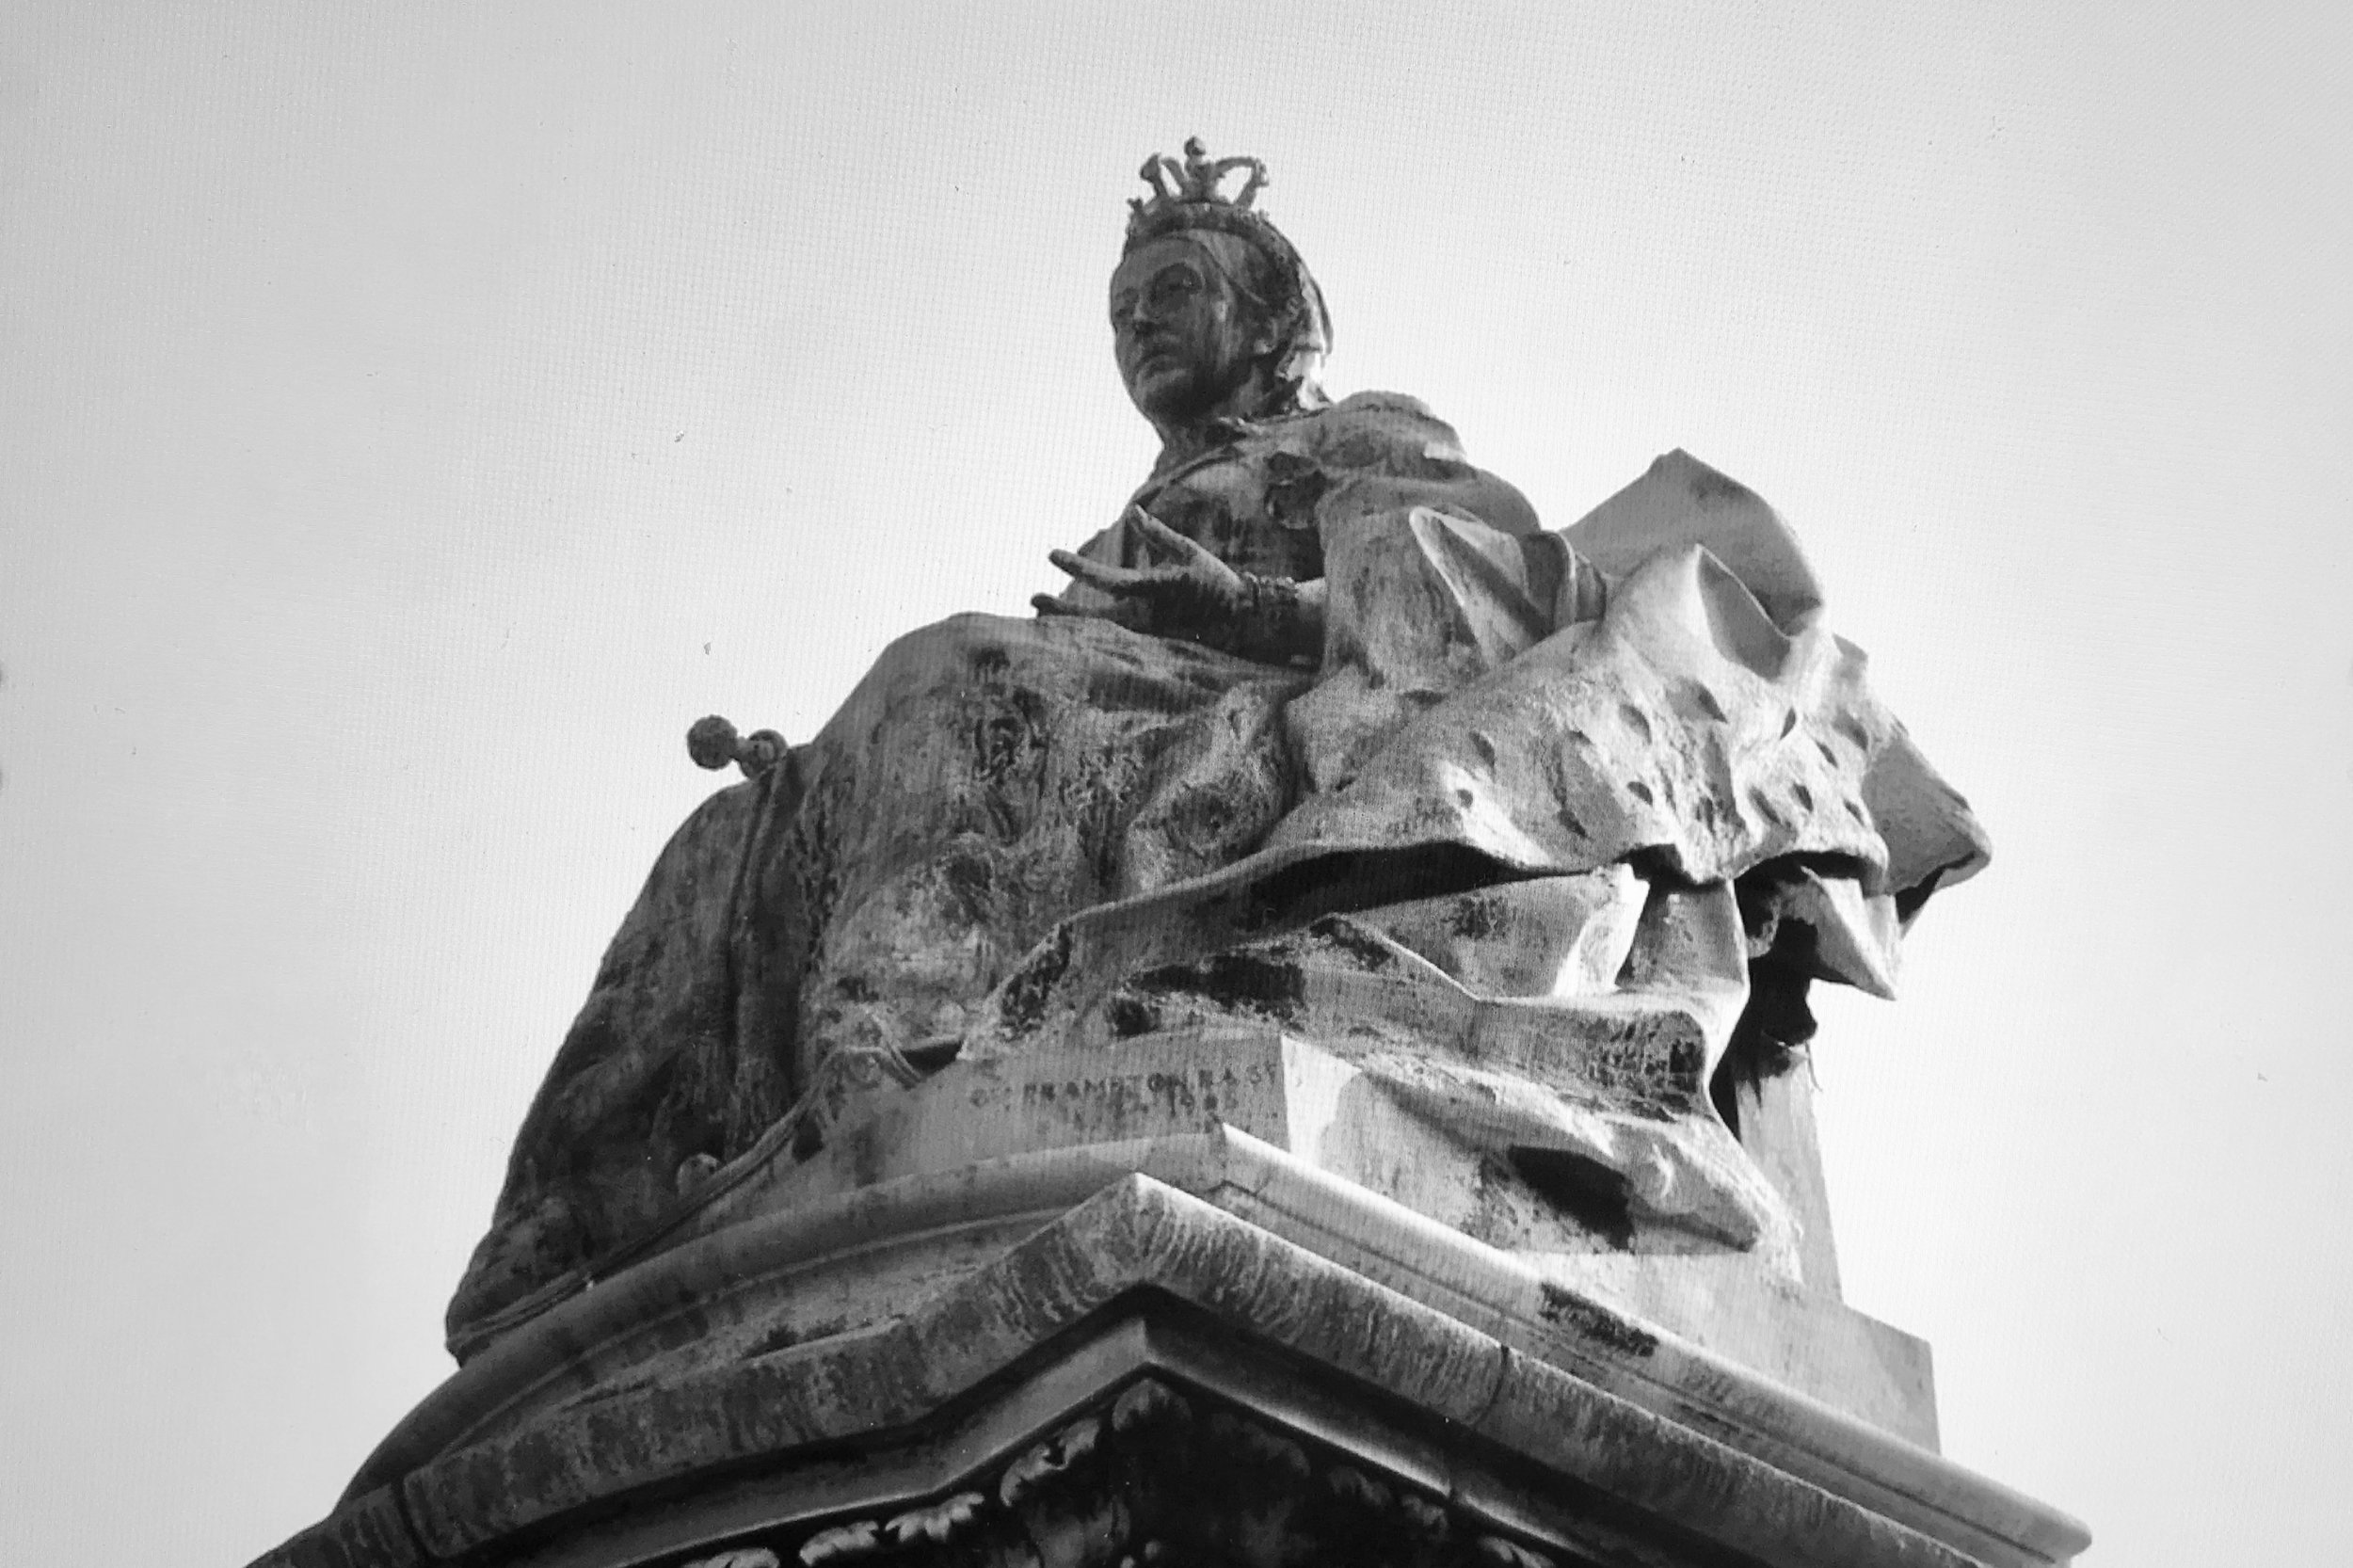 Queen Victoria Statue, Woodhouse Moor, undated